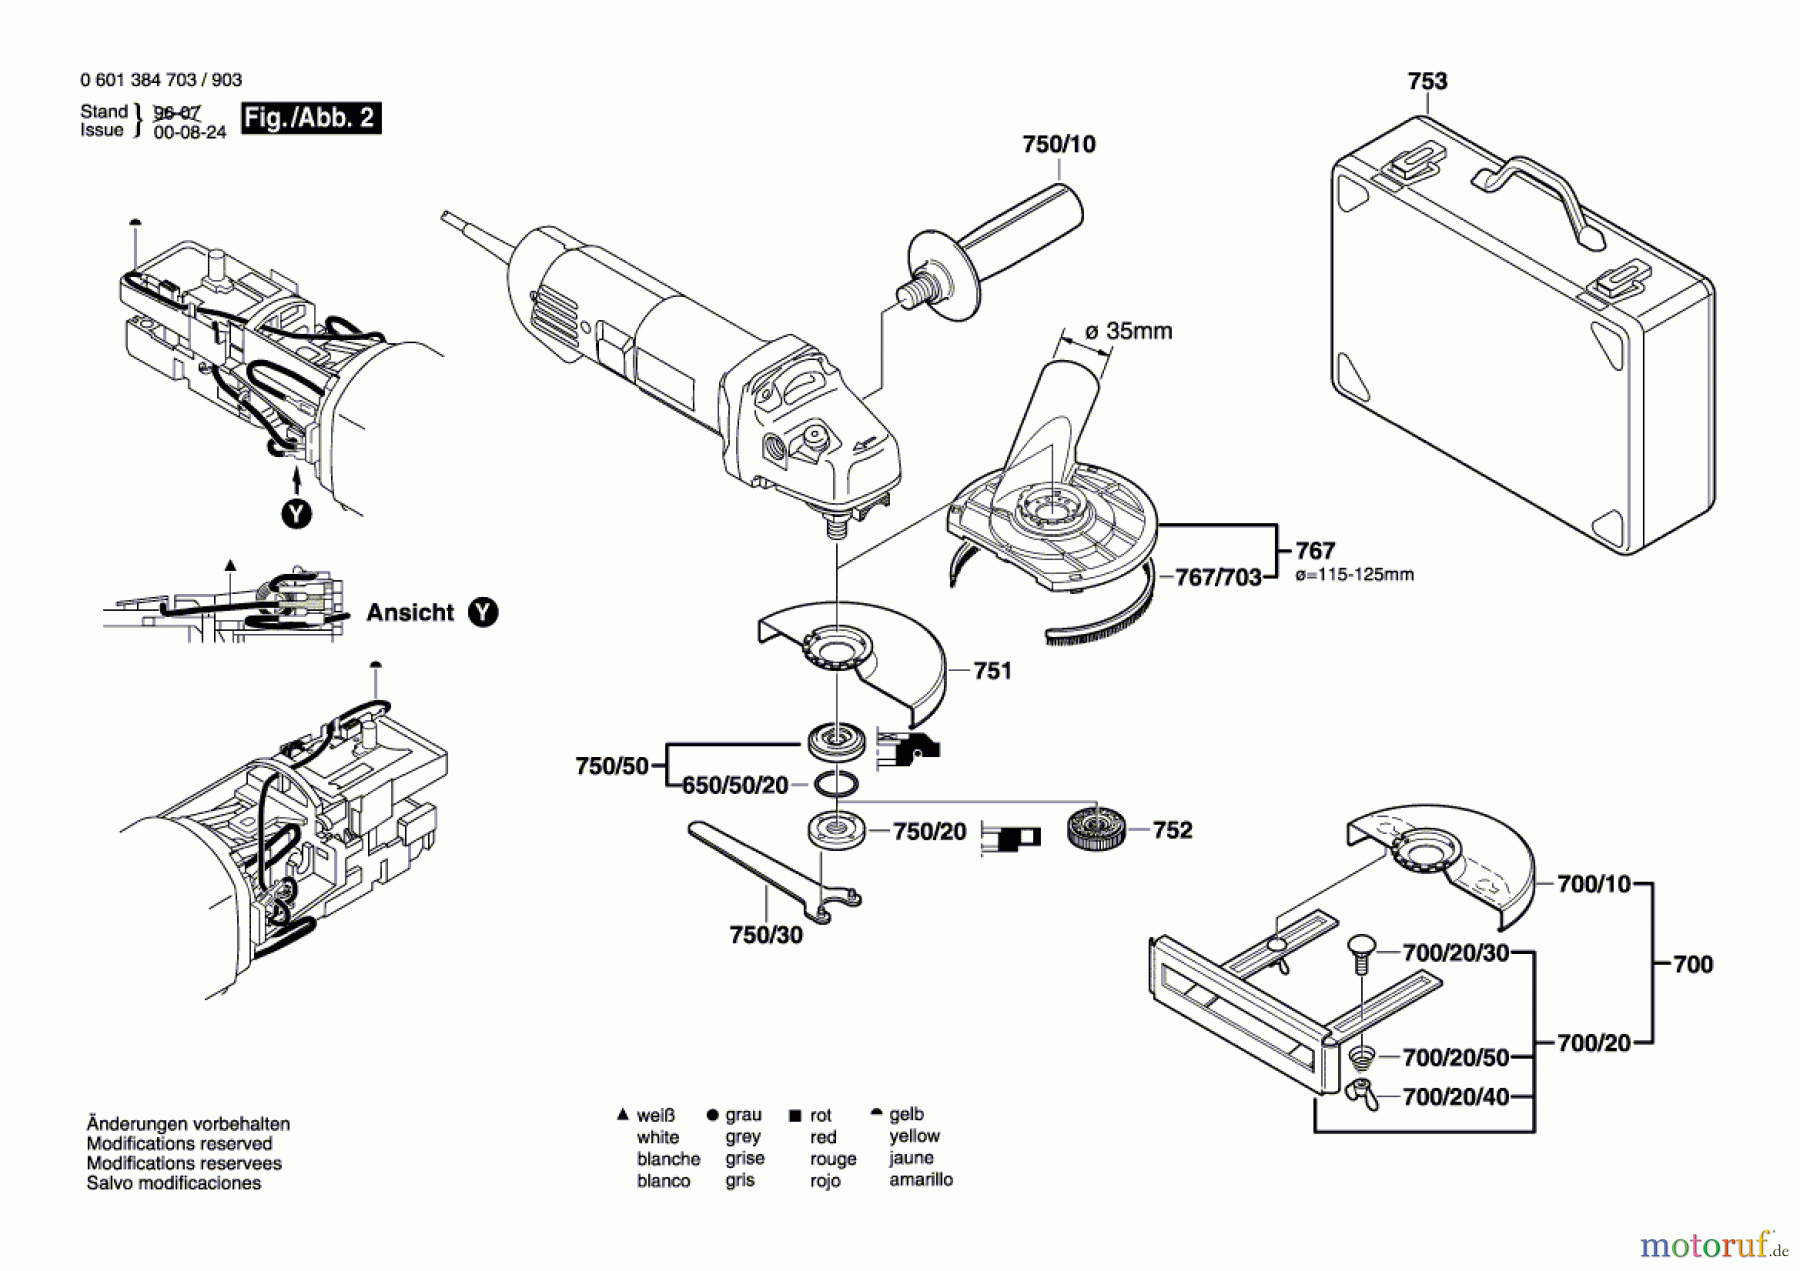  Bosch Werkzeug Winkelschleifer GWS 14-125 C Seite 2